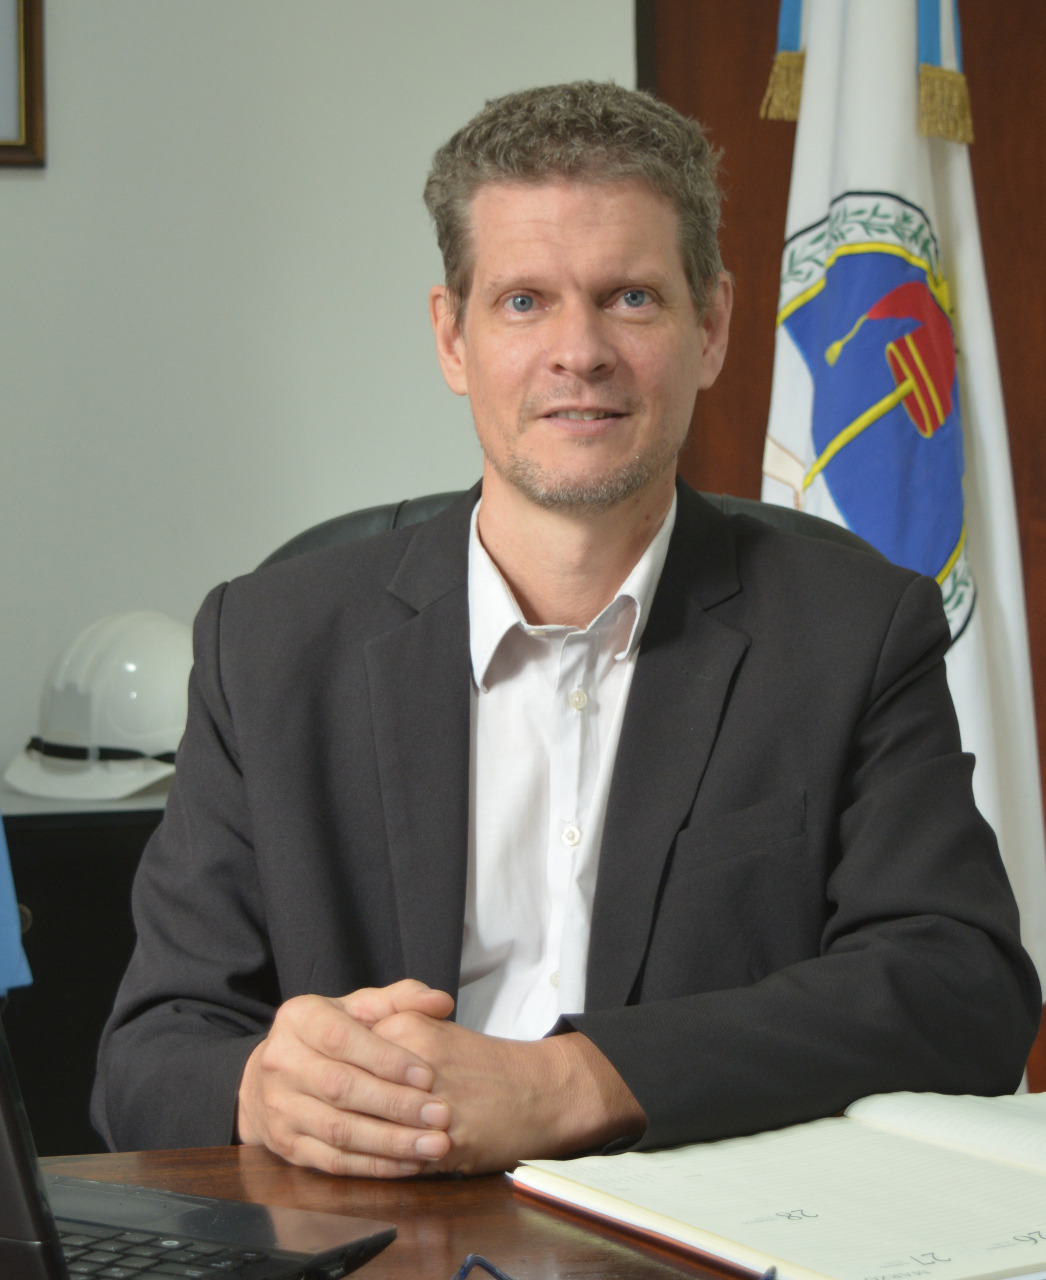 Dr. Geol. Miguel Soler